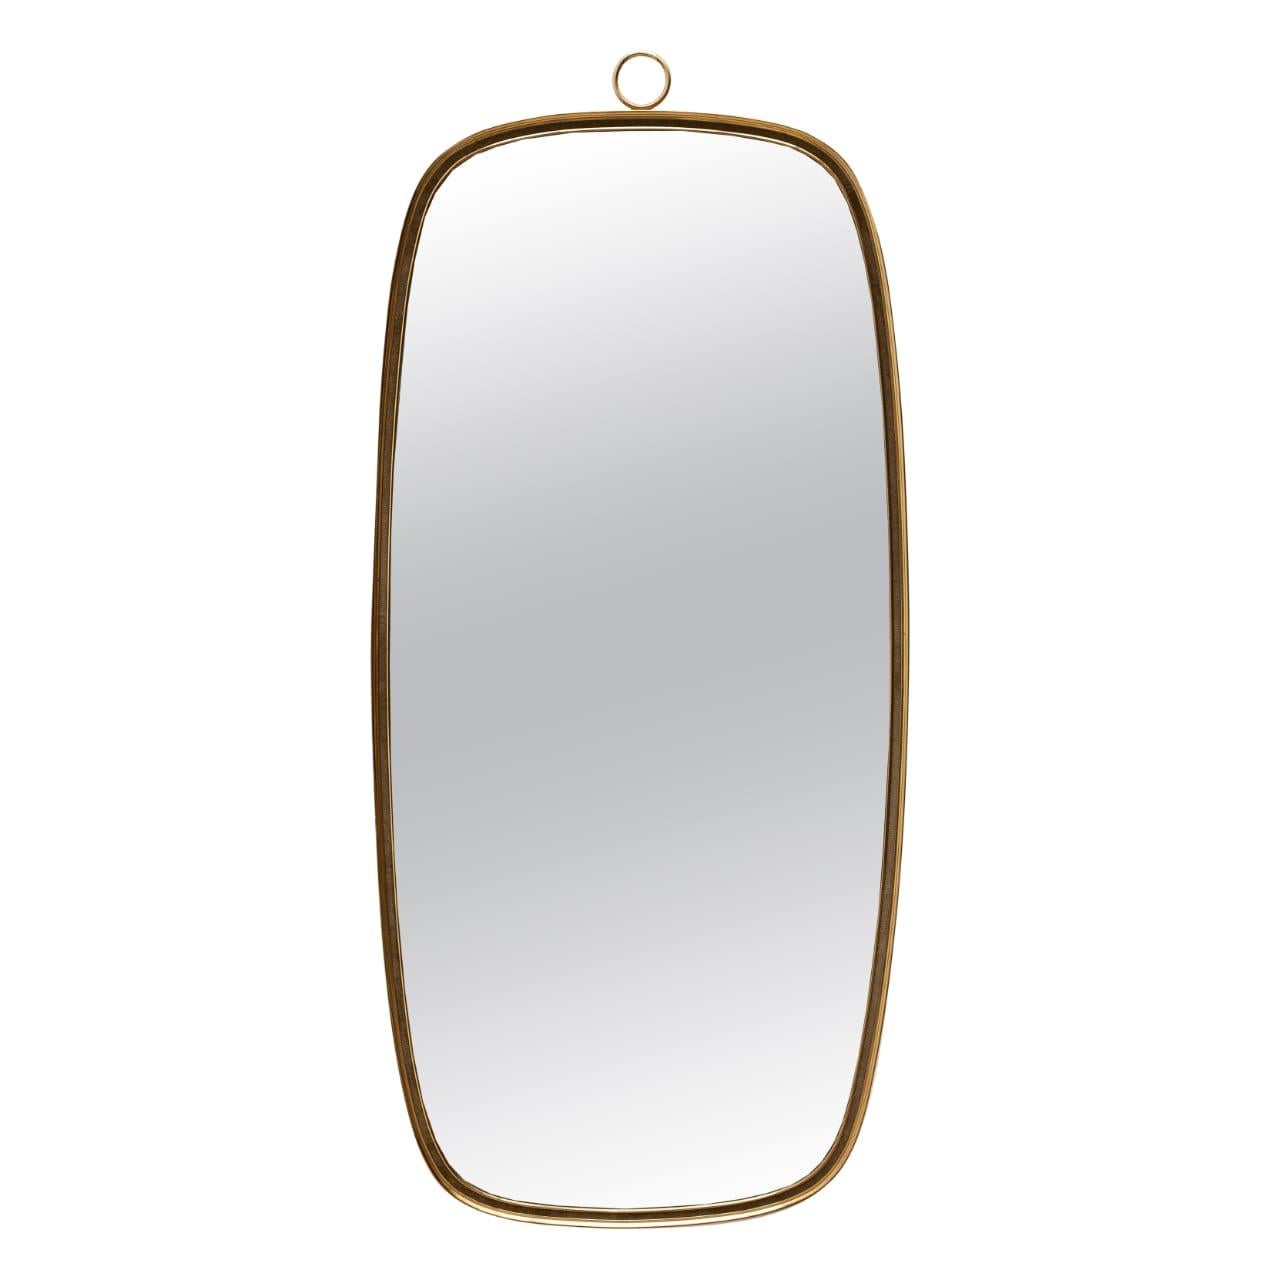 Midcentury Oval Brass Mirror 1950s, Italy